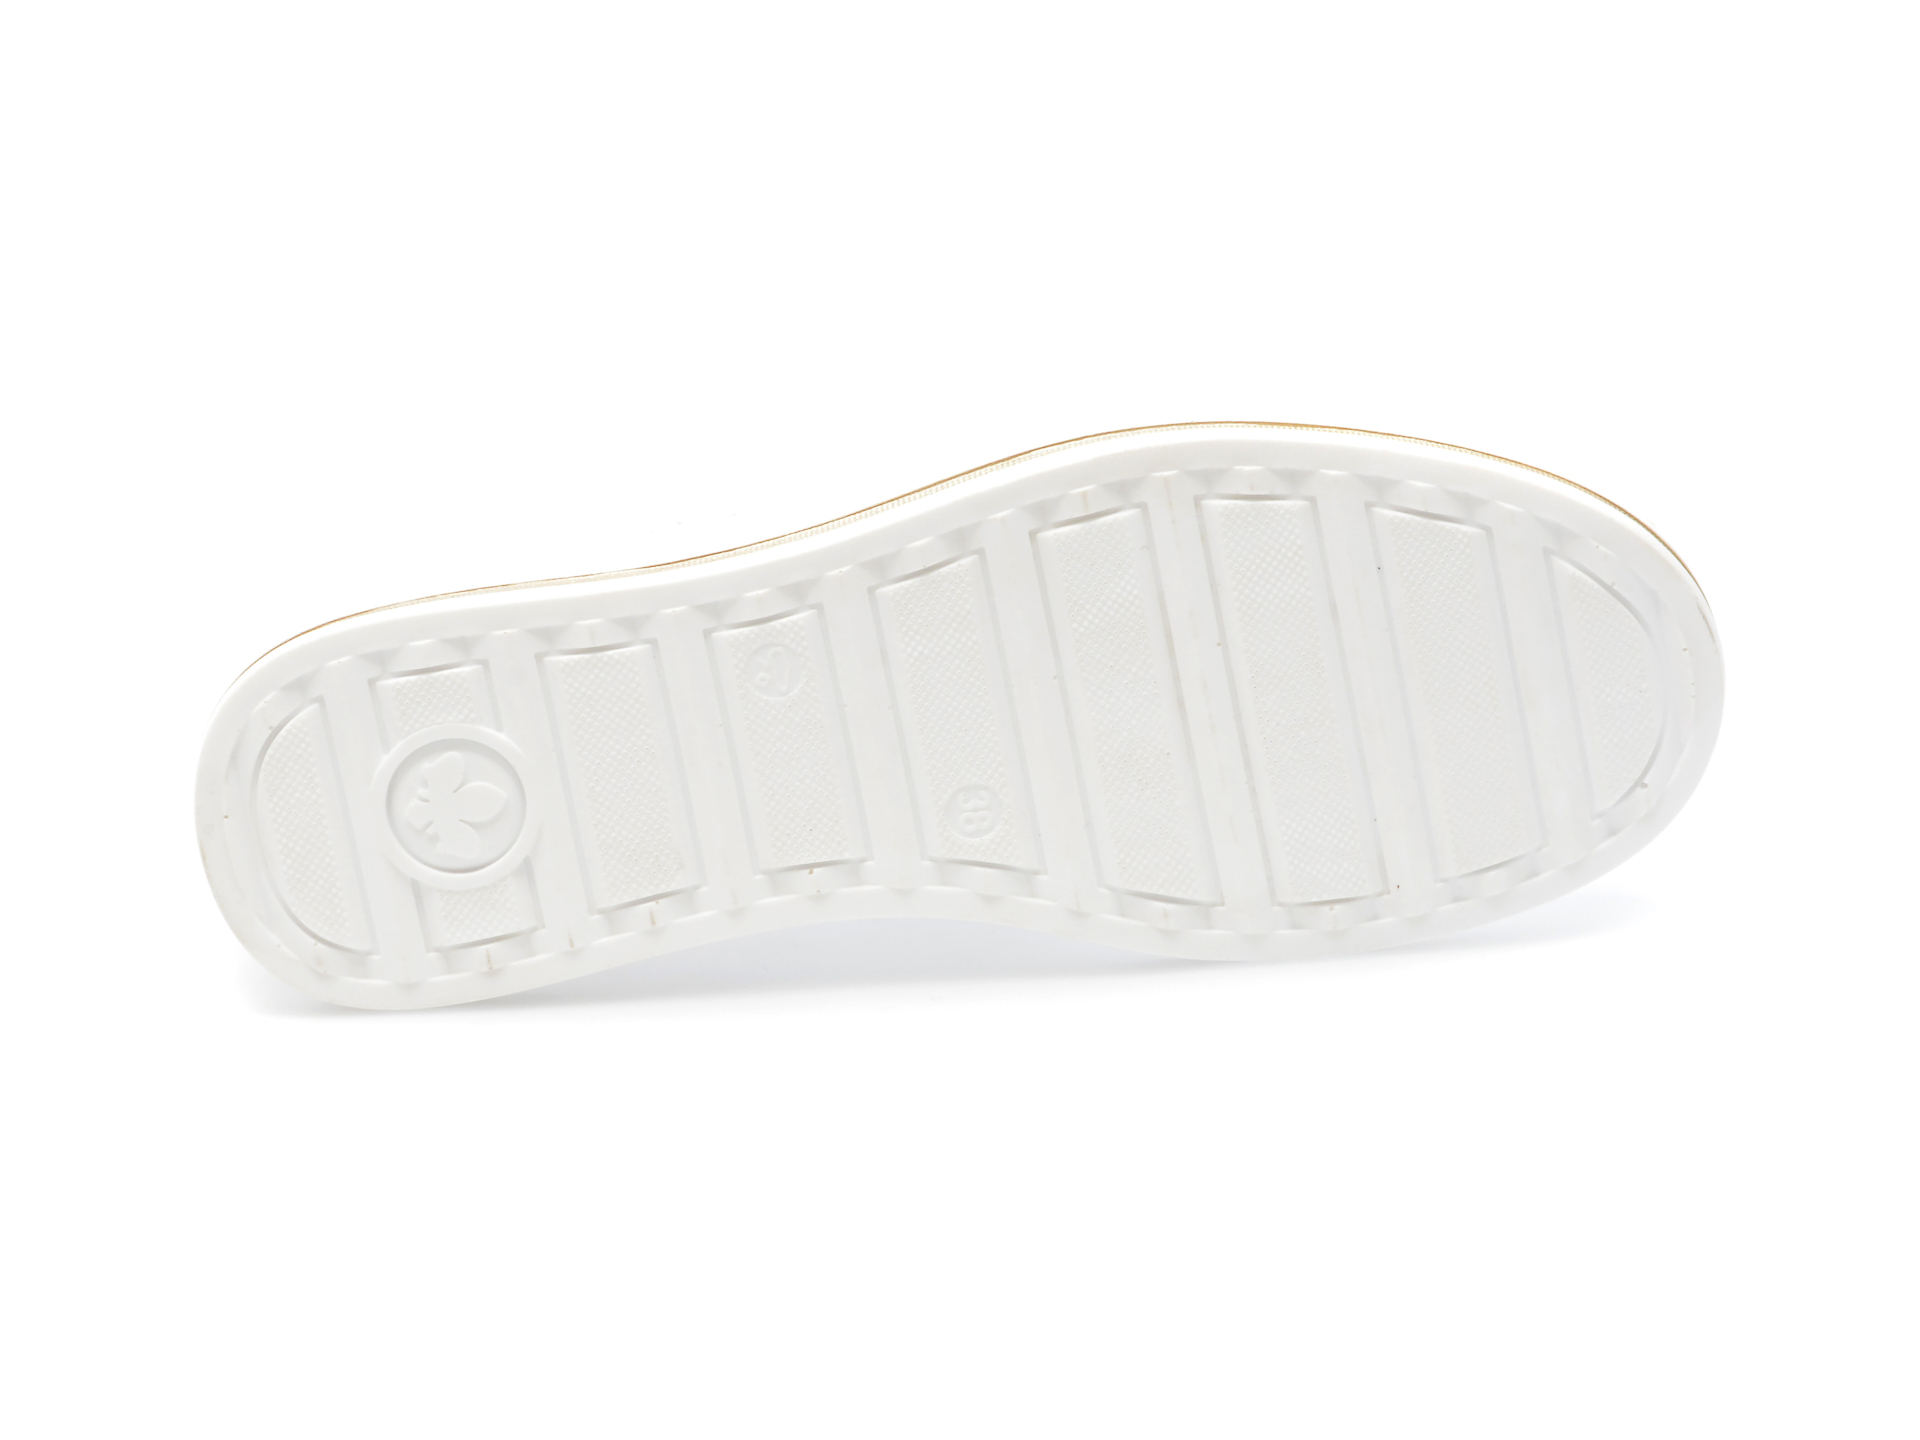 Pantofi RIEKER albi, M5950, din piele ecologica